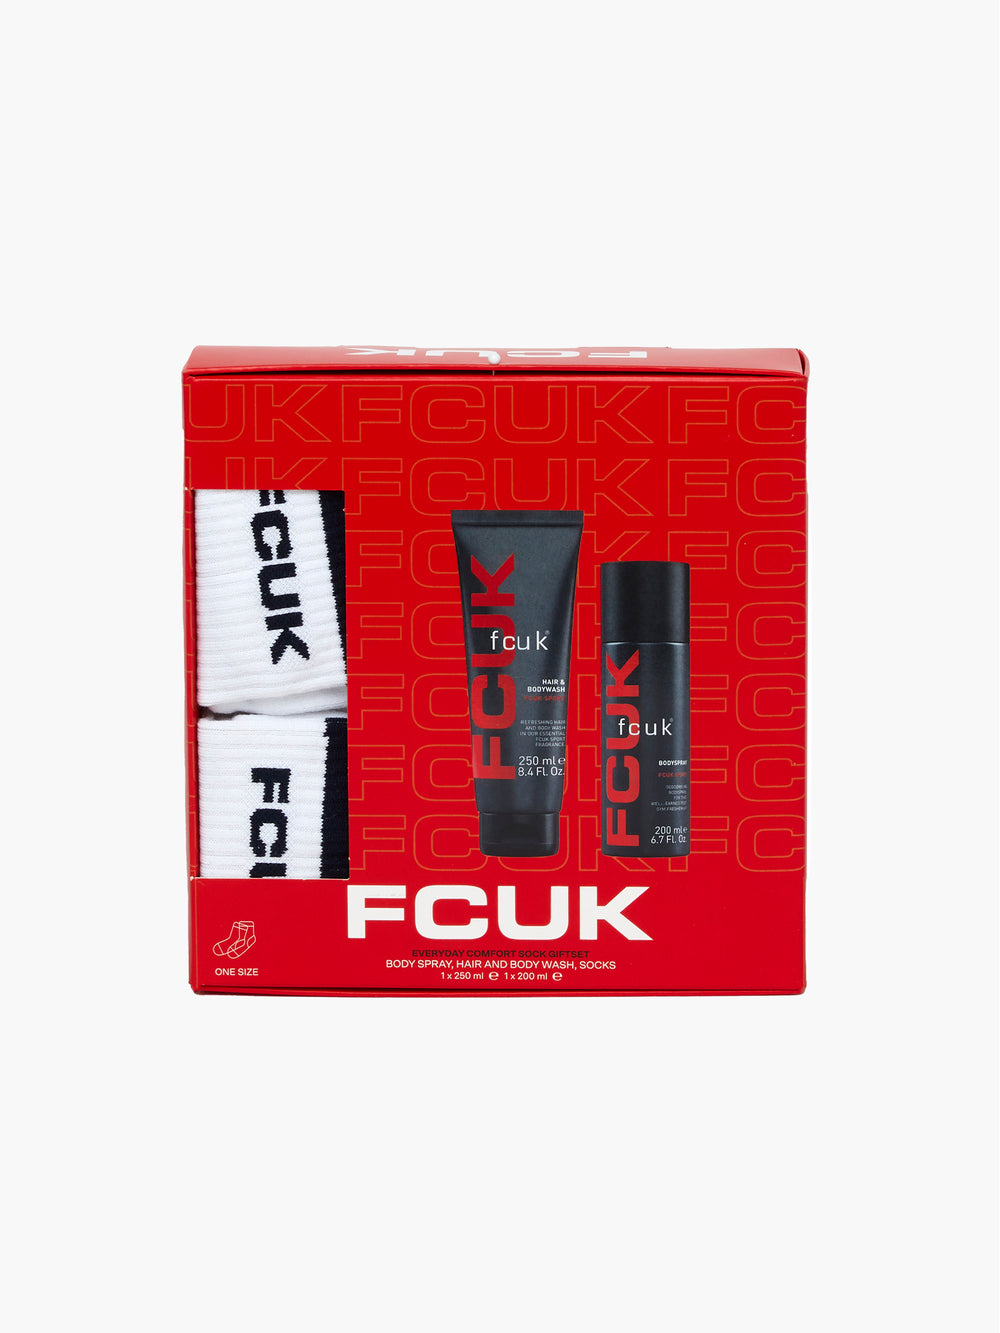 FCUK SPORT Socks Gift Set Giftset White/Marine